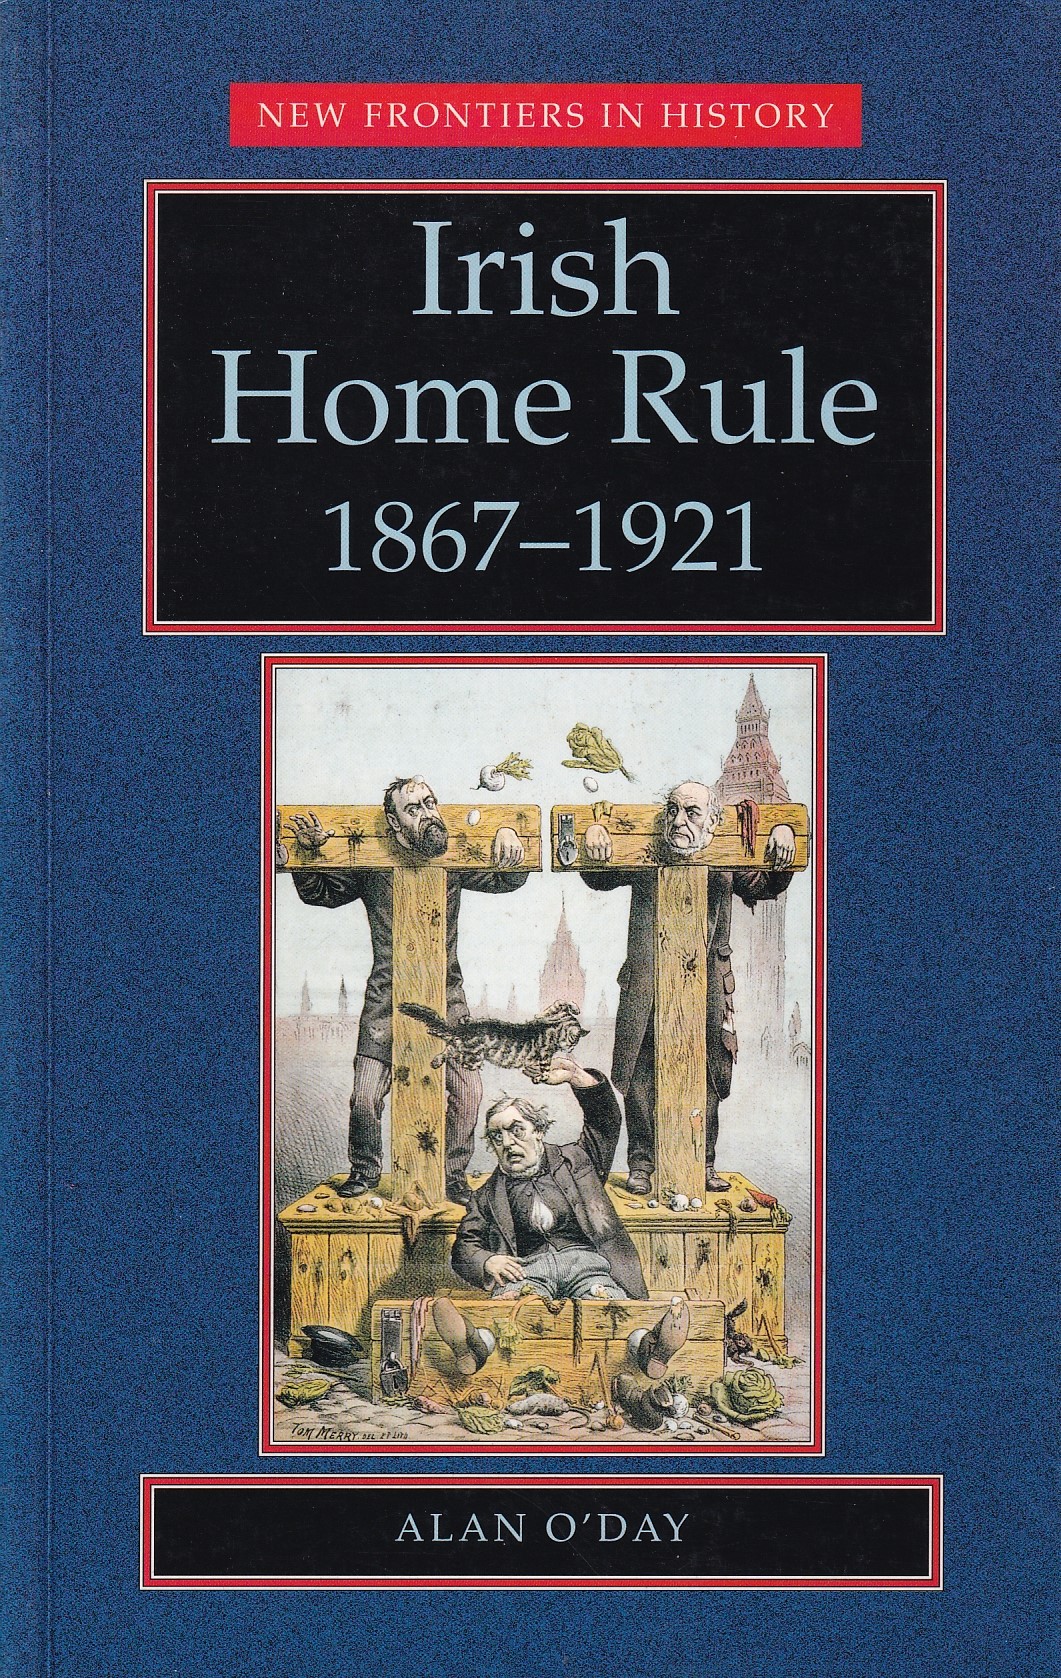 Irish Home Rule, 1867-1921 by Alan O'Day